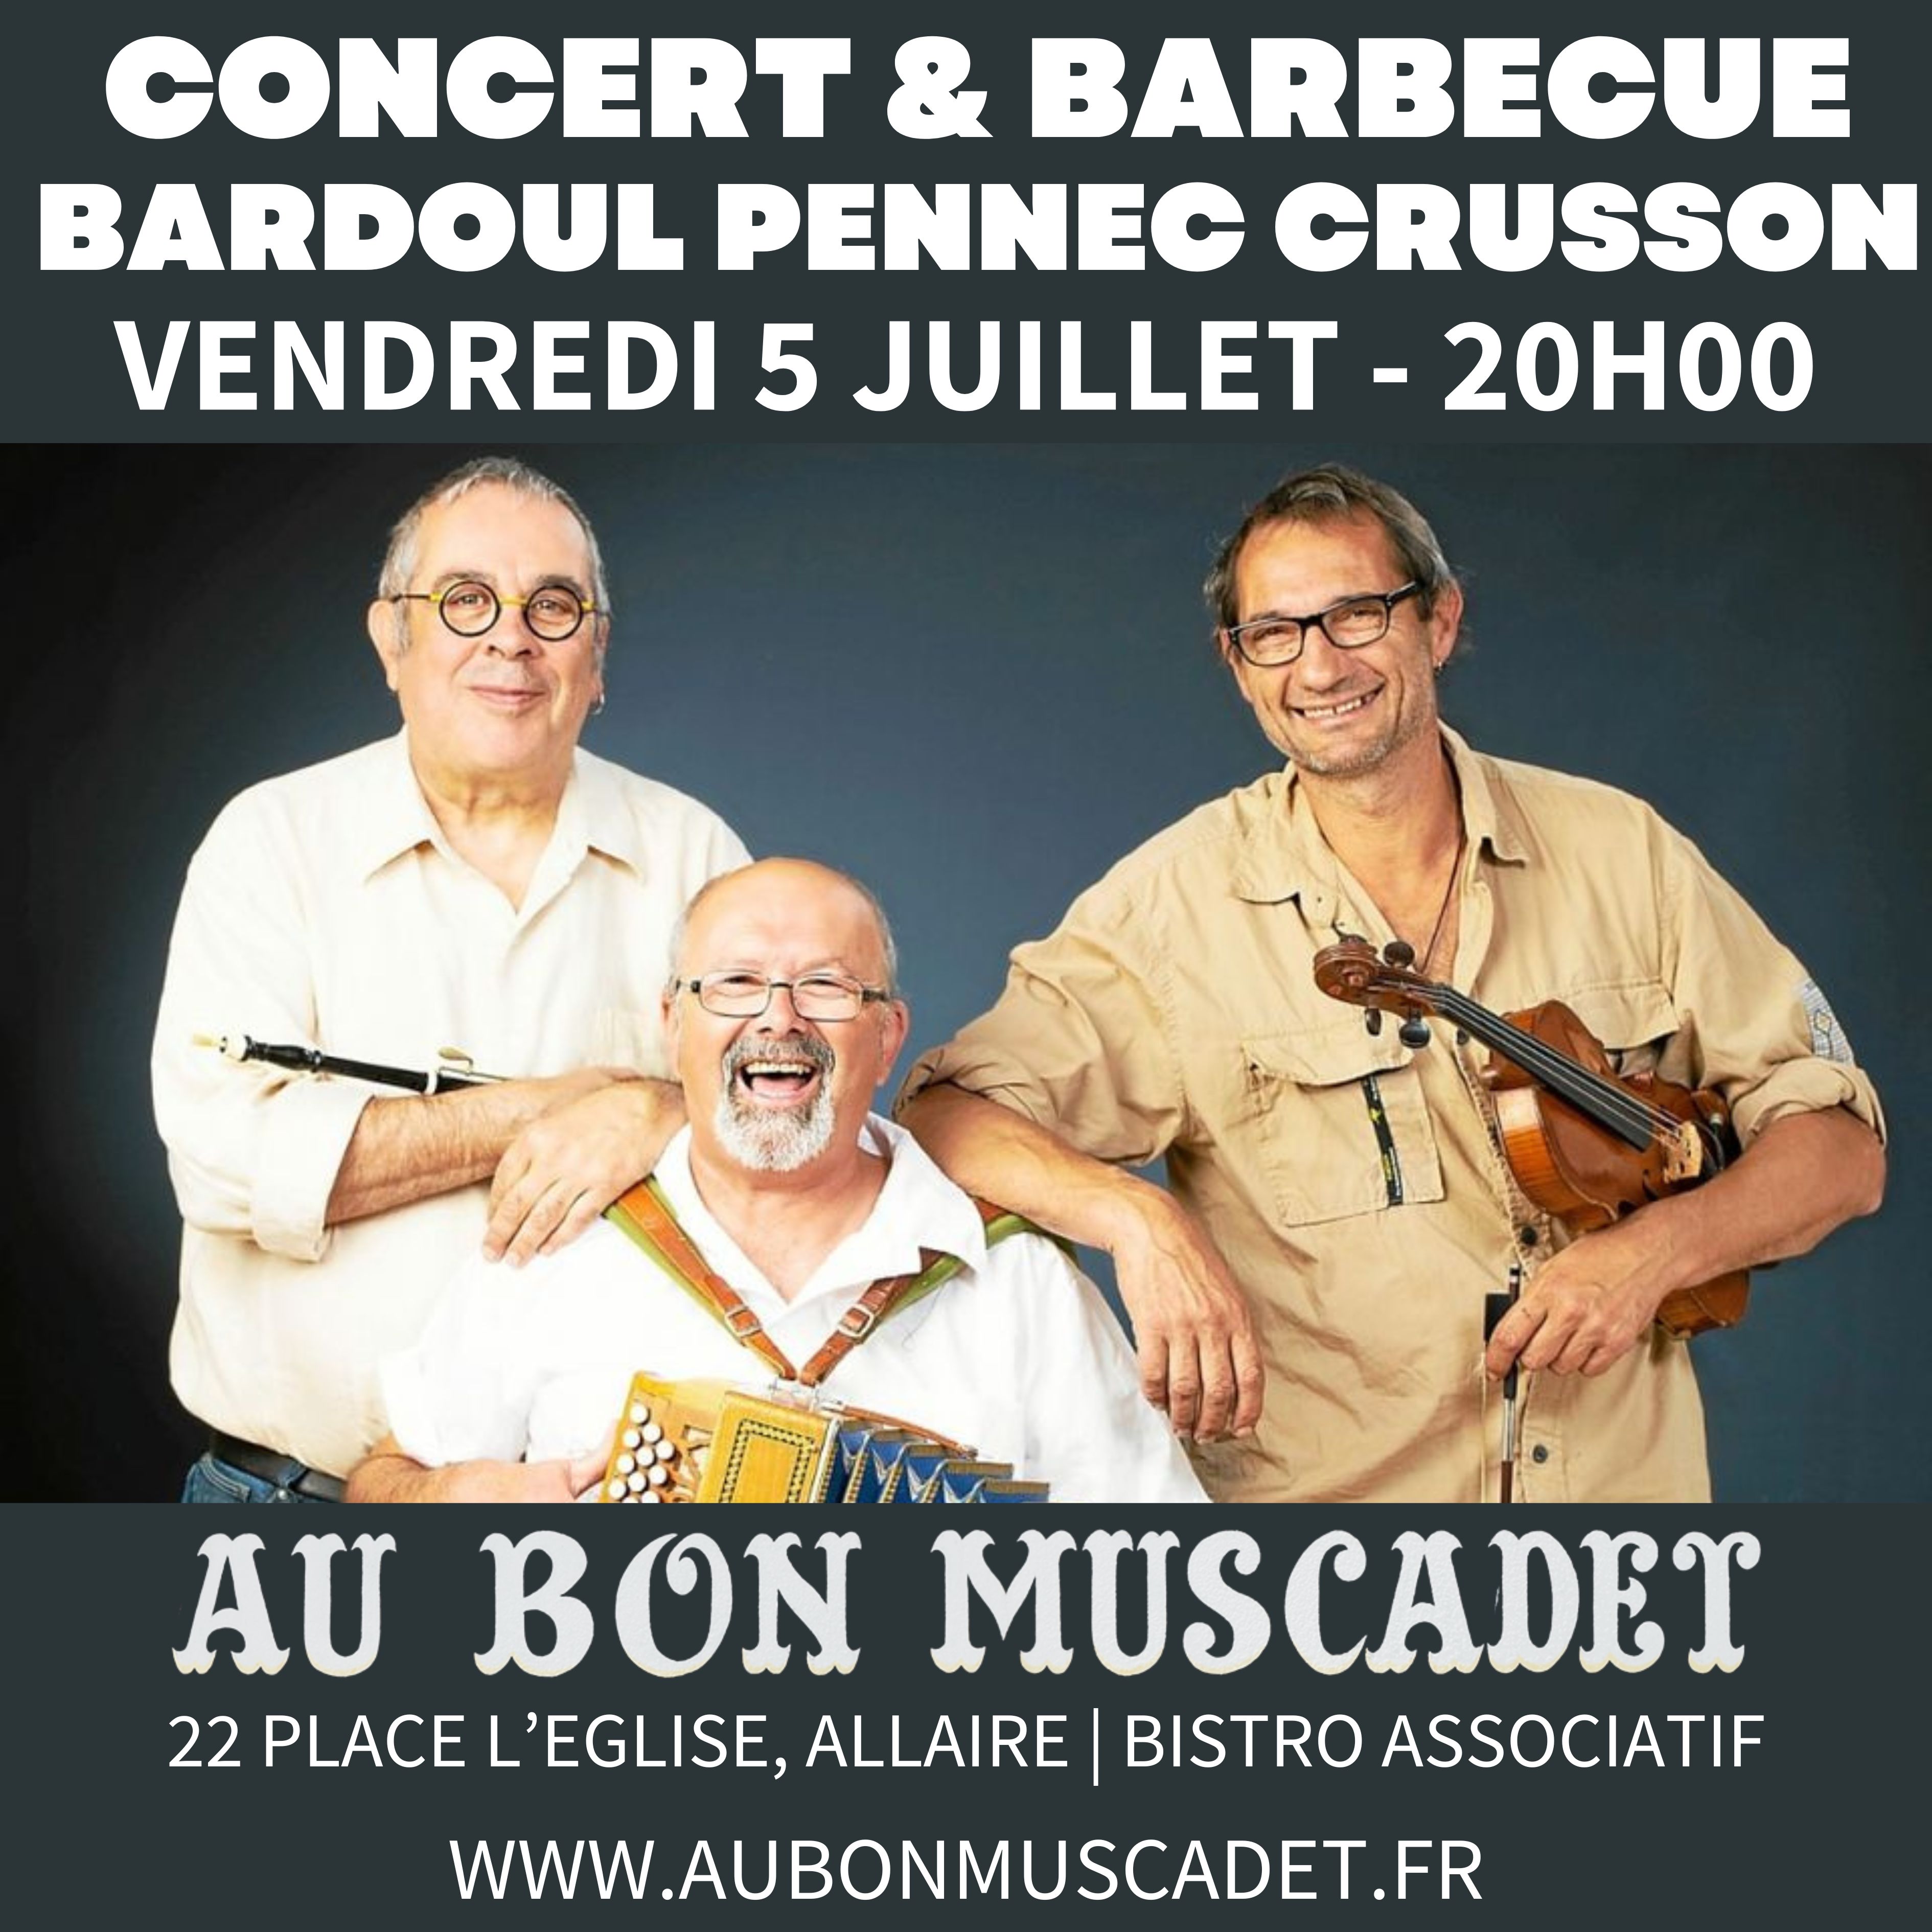 Concert du trio Pennec/Crusson/Bardoul